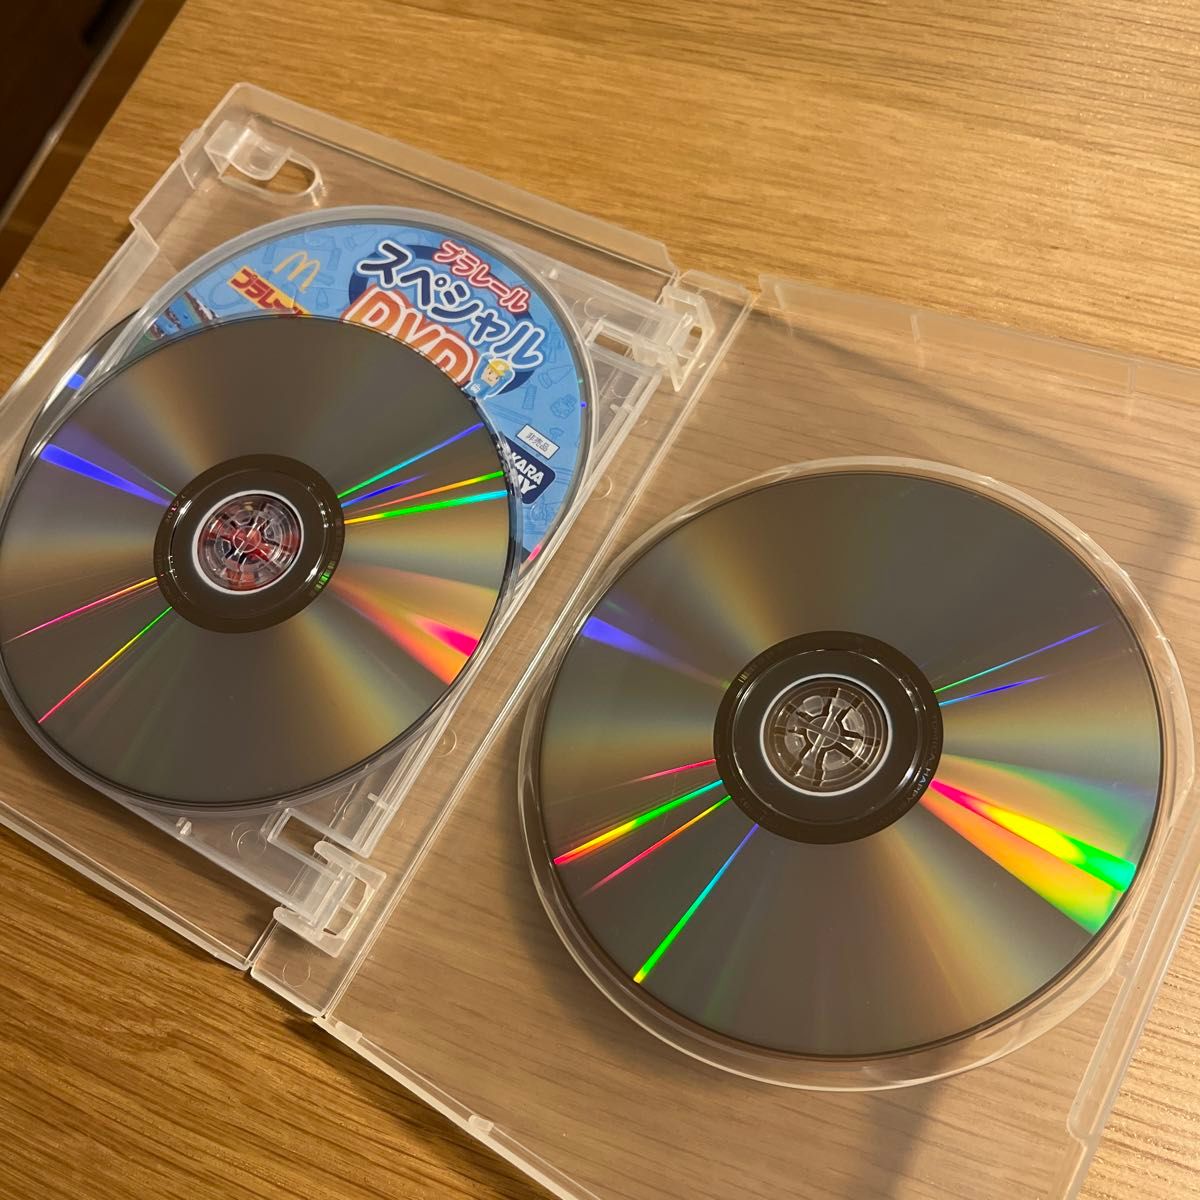 トミカ★プラレール非売品DVD6枚セットケース付き